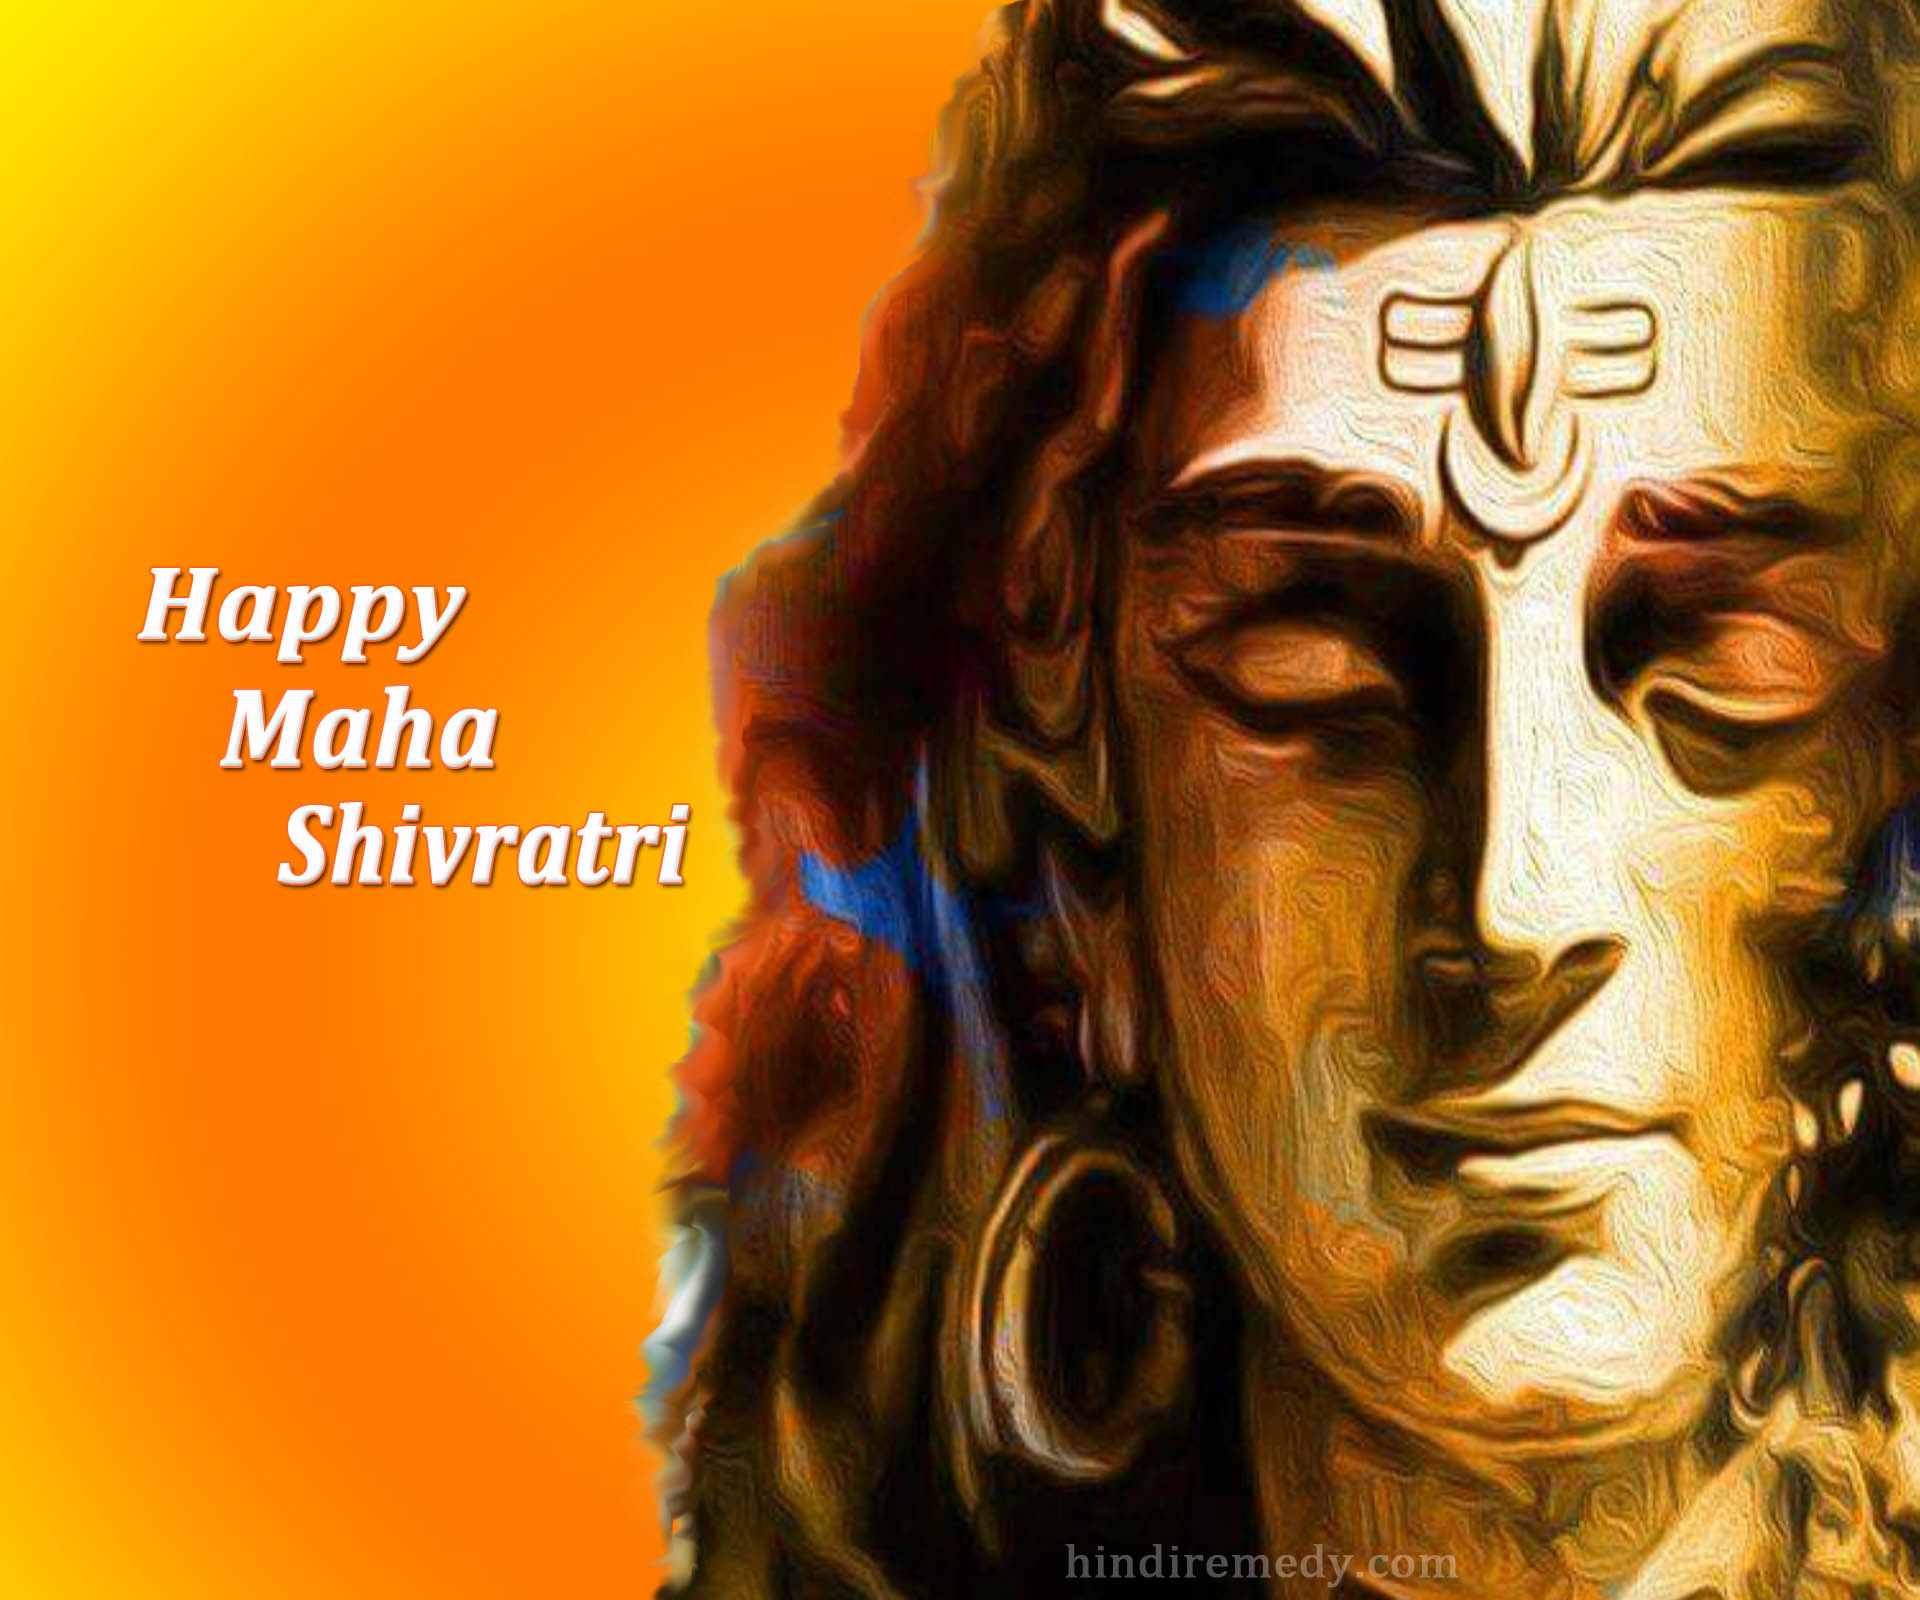 Bhagwan Ji Help me Har Har Mahadev Happy Shivaratri Wallpaper